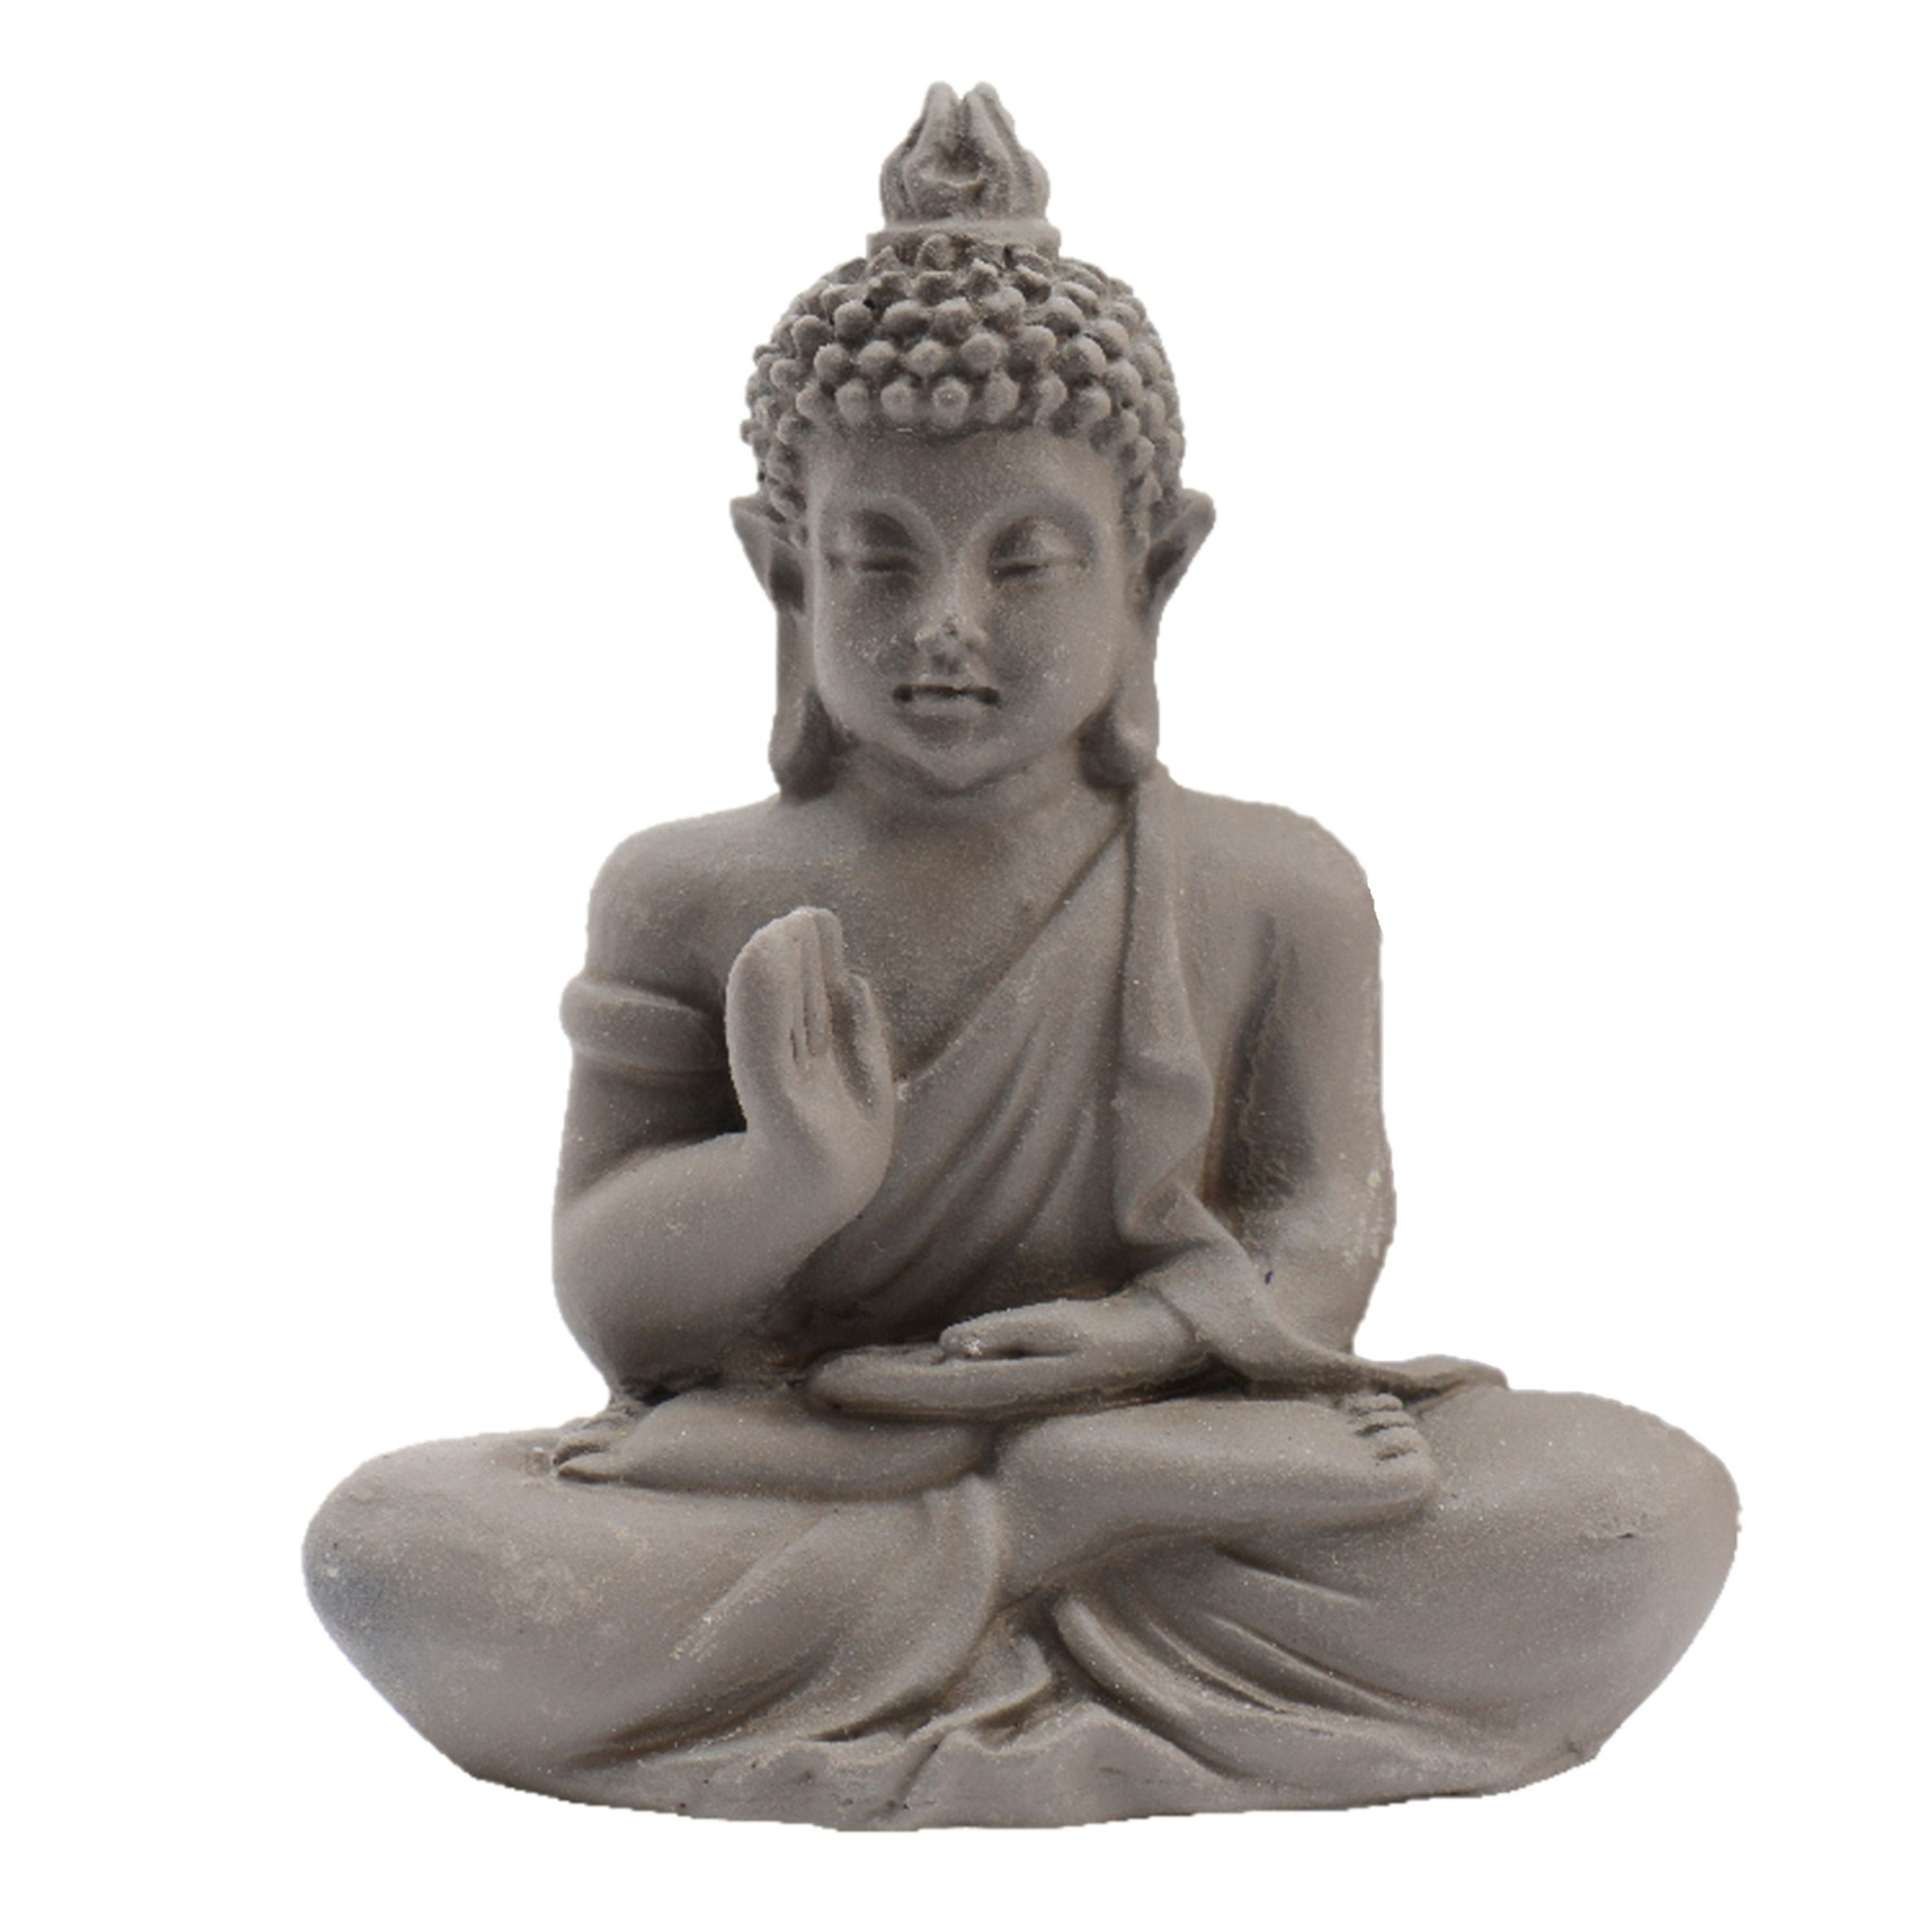 Merkloos Boeddha beeldje - mini/klein cadeau model - in tasje - geluk en wijsheid brengen - H5 cm -